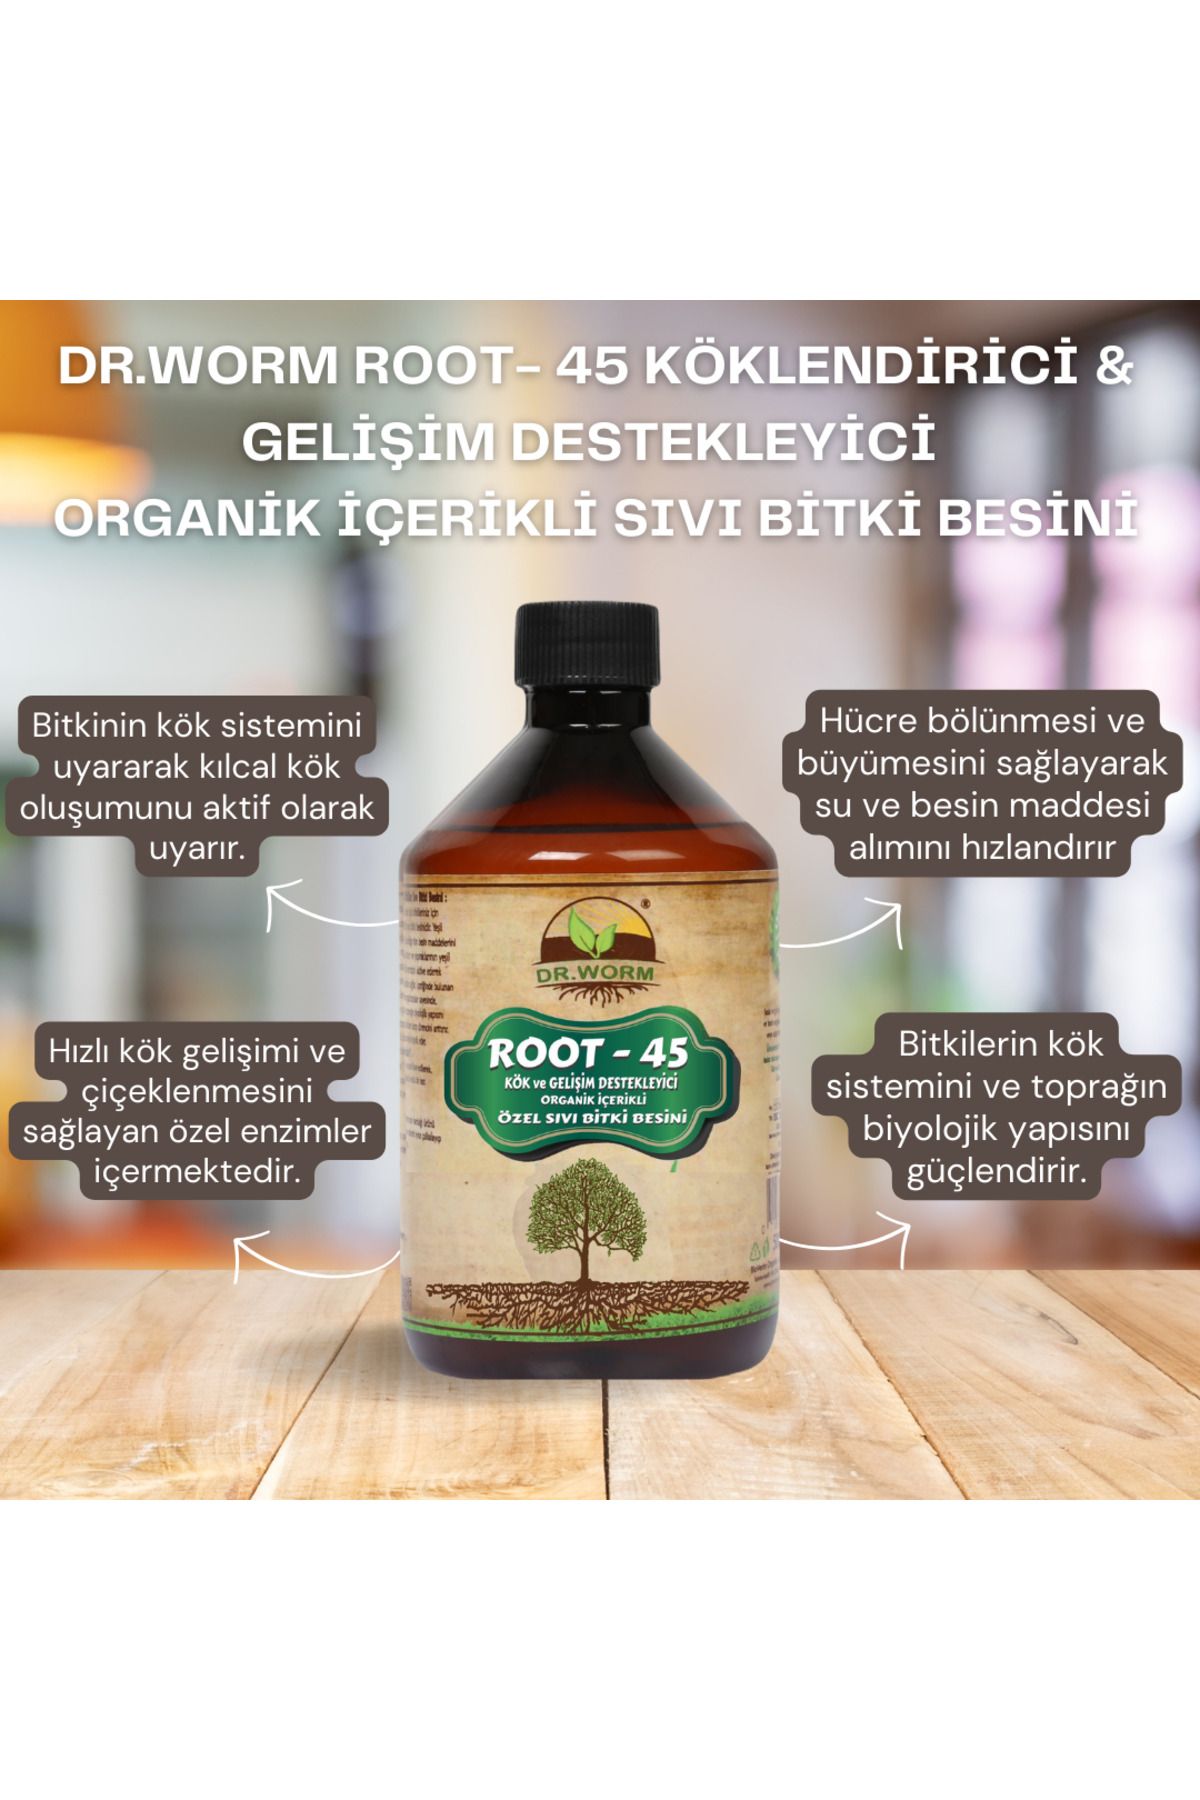 Dr.Worm Root- 45 Köklendirici & Gelişim Destekleyici Organik Içerikli Sıvı Bitki Besini 500 Ml